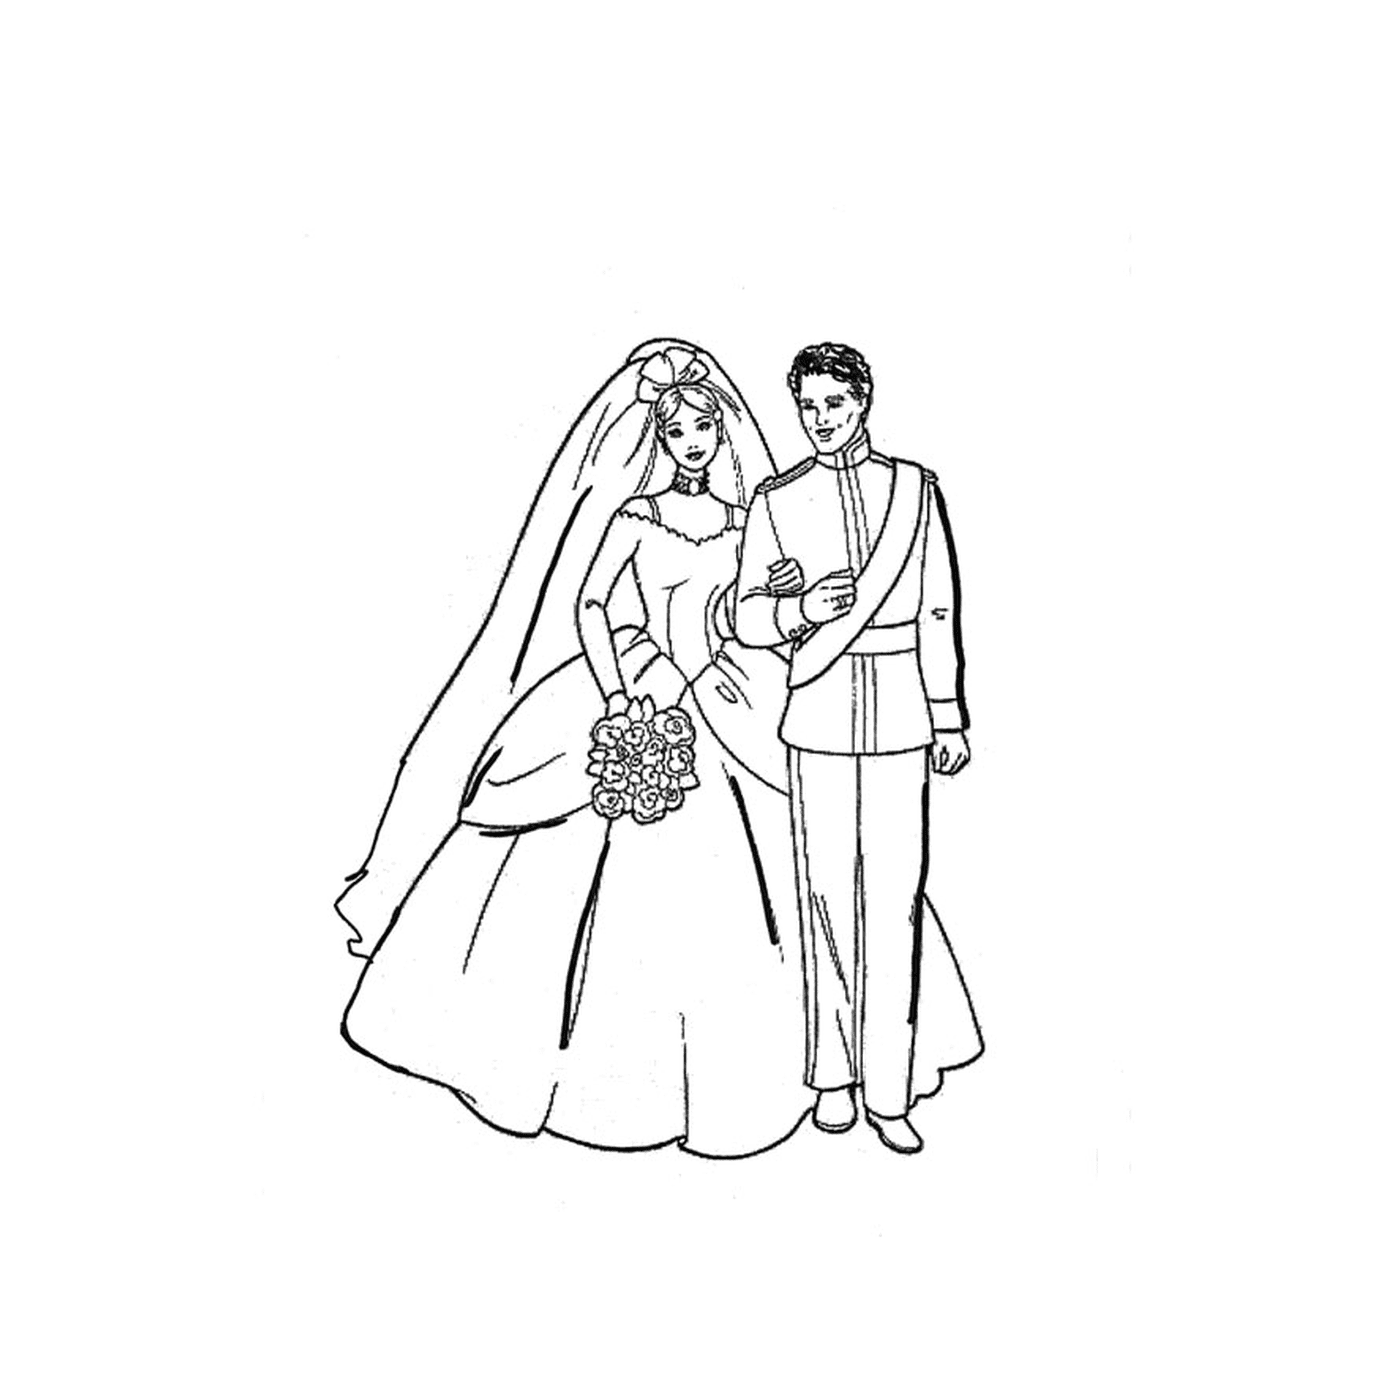   Un homme et une femme en tenue de mariage se tenant ensemble 